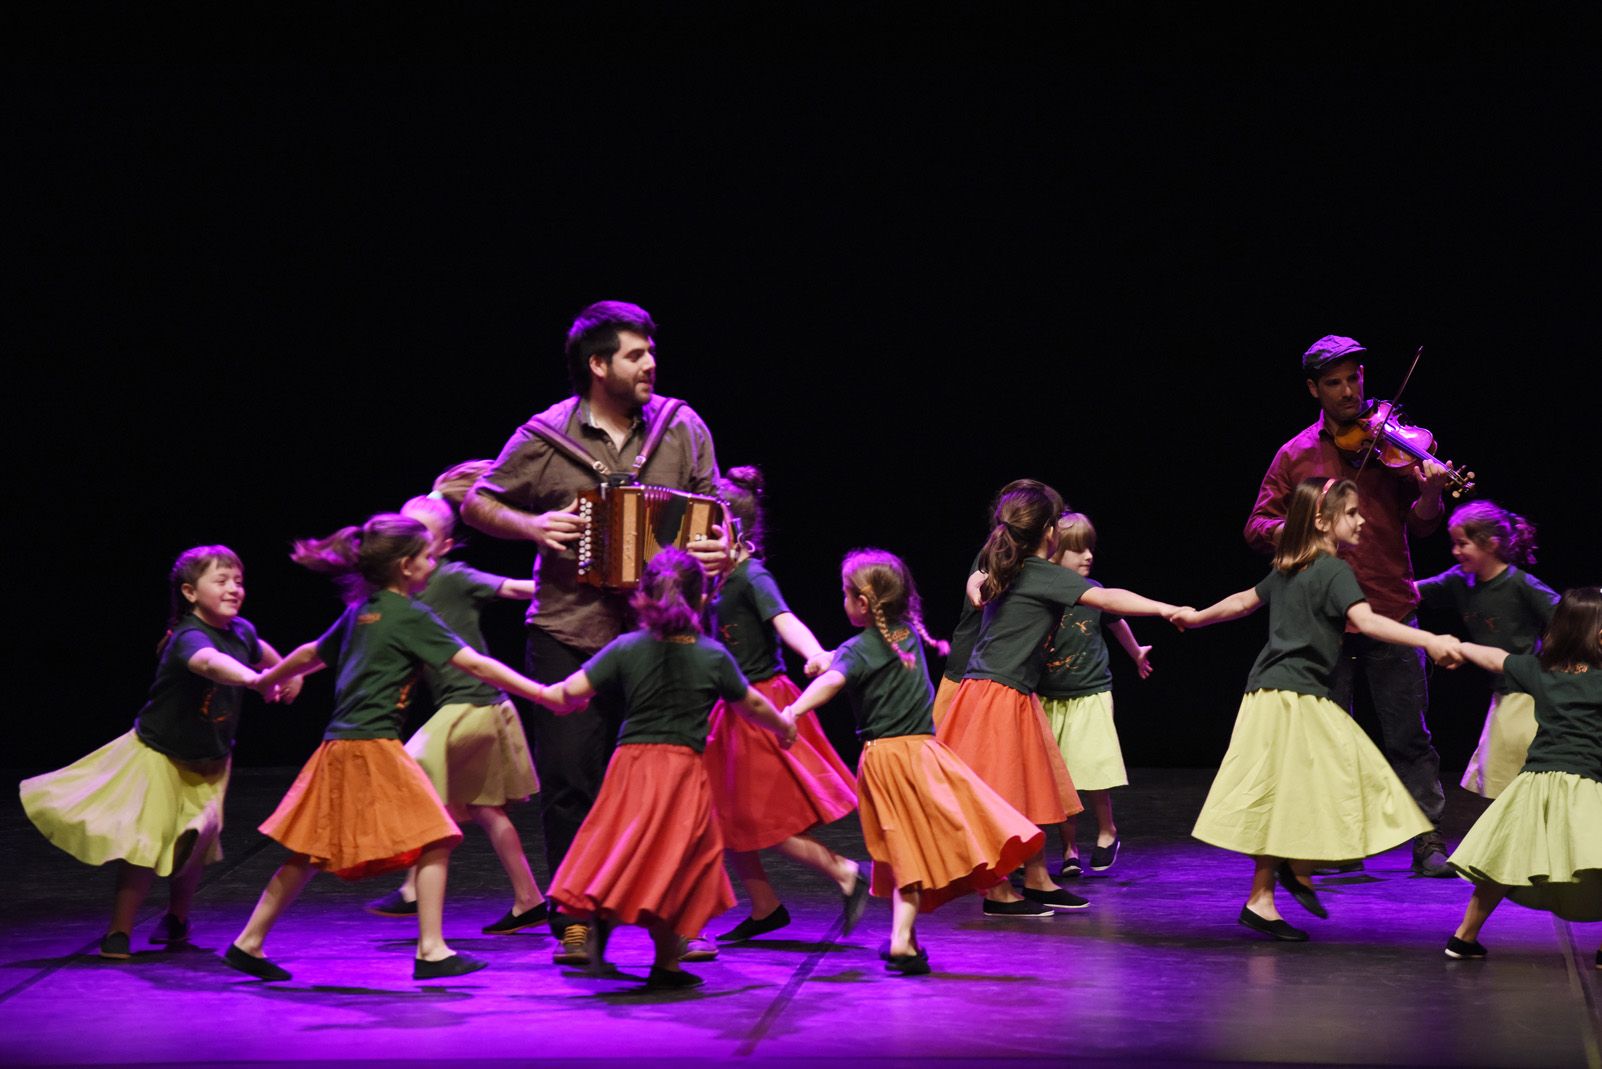 Espectacle de l’Esbart "ballem perquè ens mirin" al Teatre Auditori. Foto: Marta del Moral